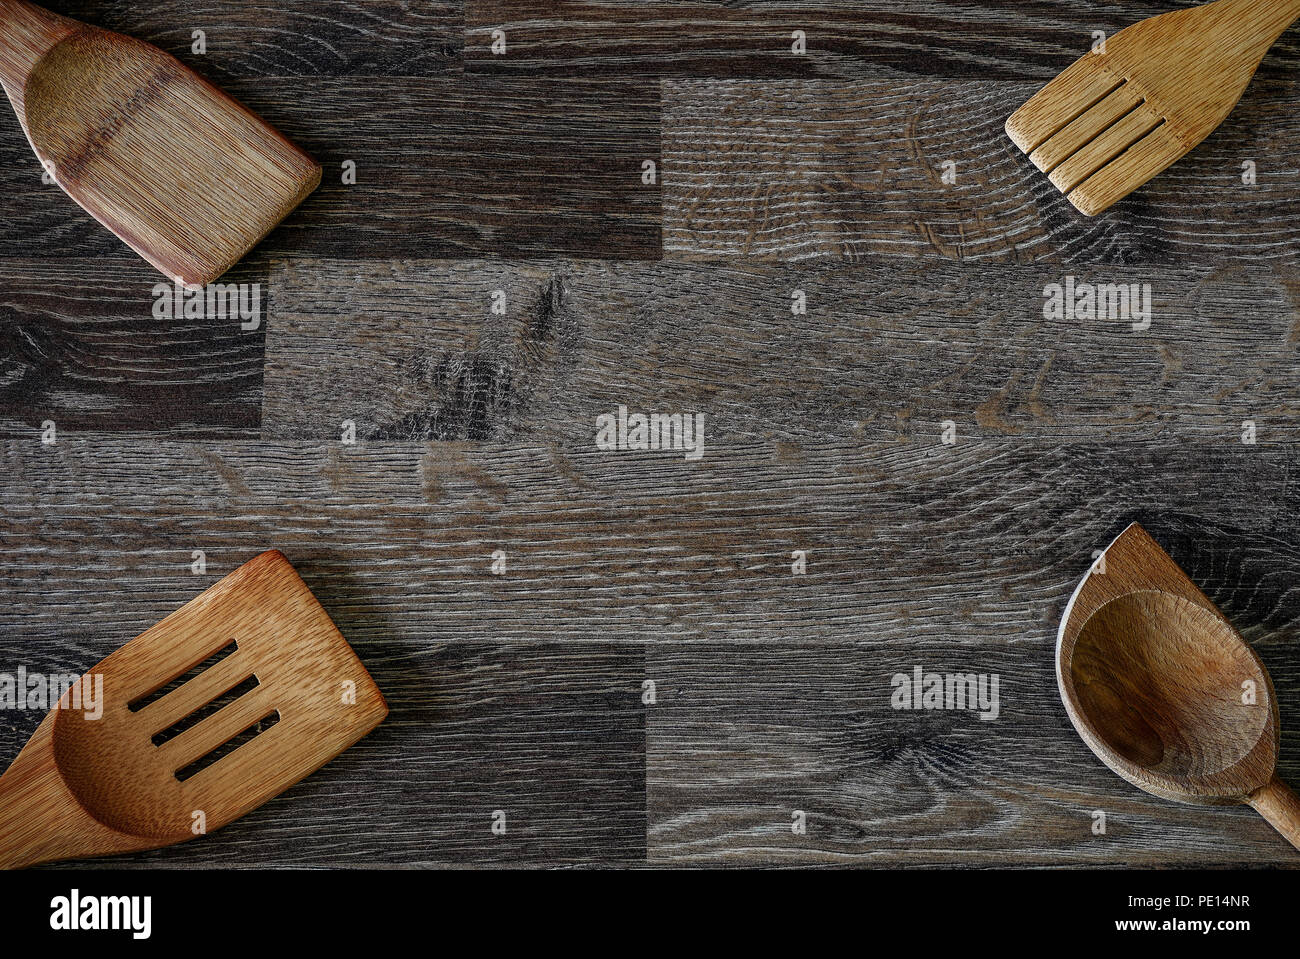 La palabra cuchara se deriva de una antigua palabra que significa un chip  de madera o cuerno tallado en una pieza más grande. Cucharas de madera  fueron fáciles de tallar y por